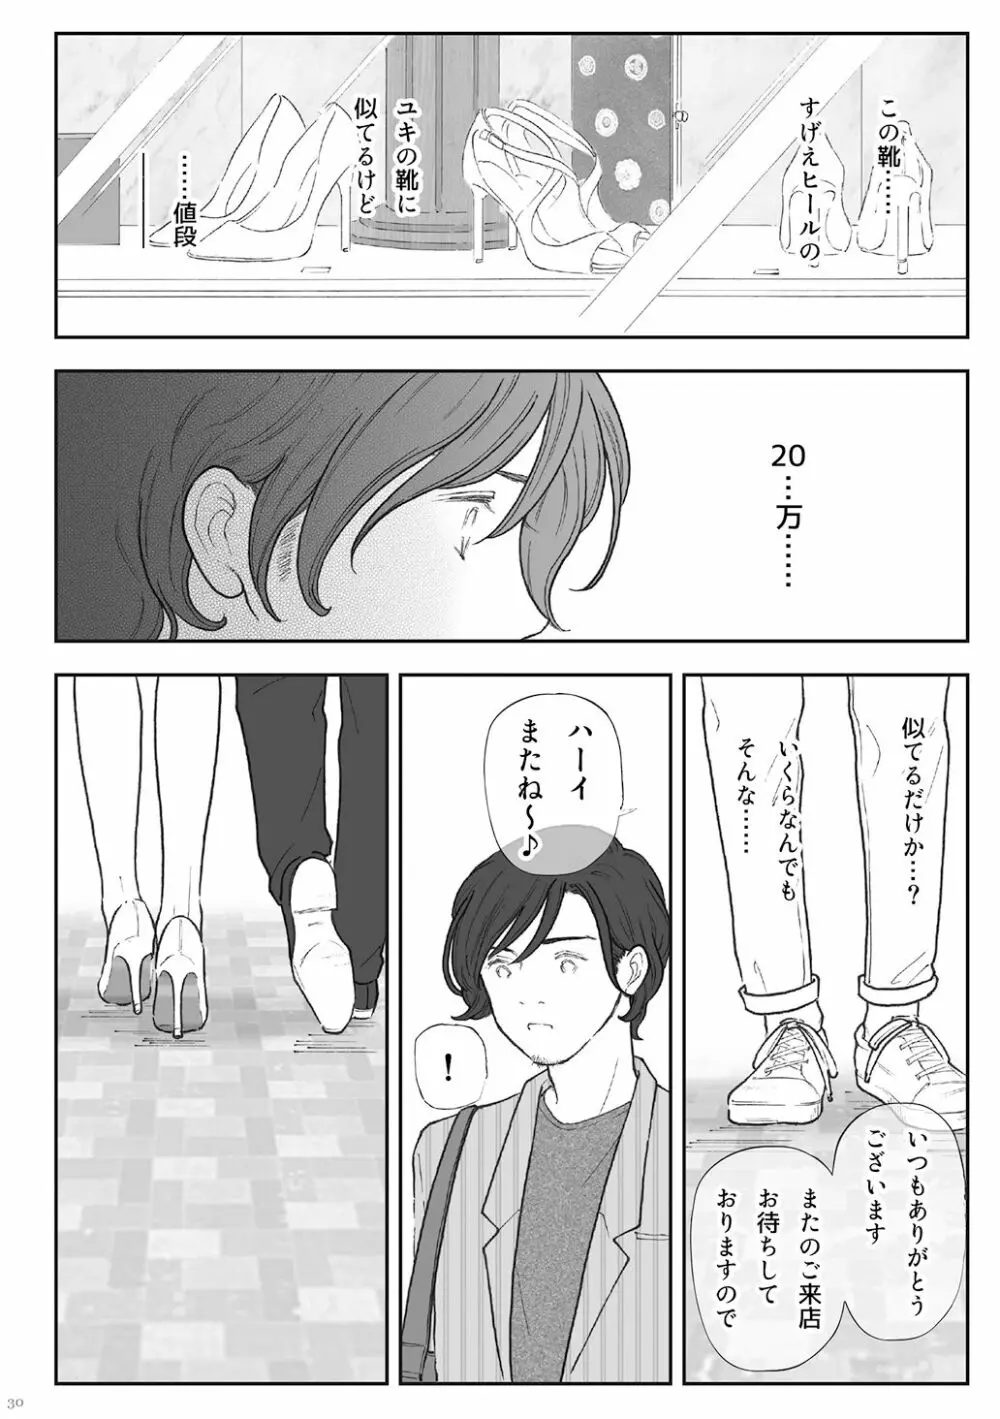 柘榴 -ざくろ- 30ページ